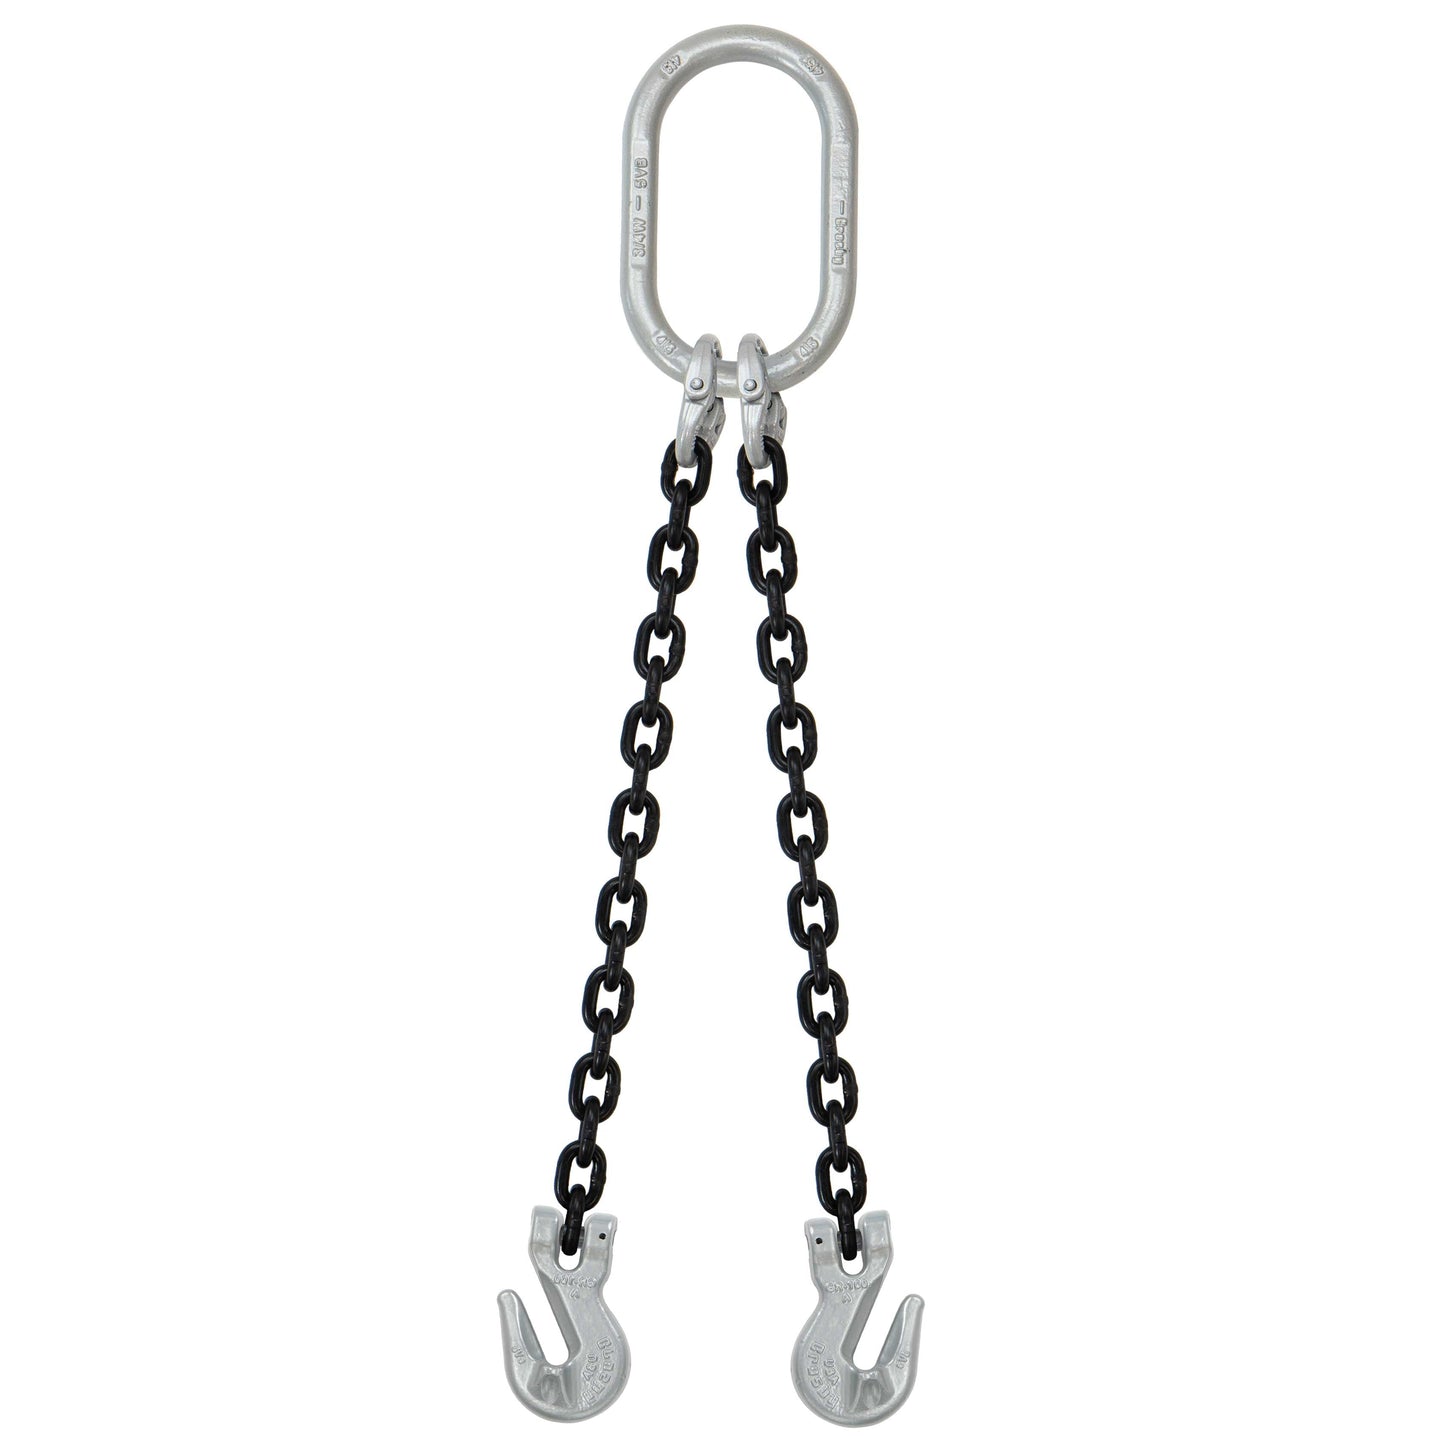 5/16" x 18' - Domestic 2 Leg Chain Sling w/ Crosby Grab Hooks - Grade 100